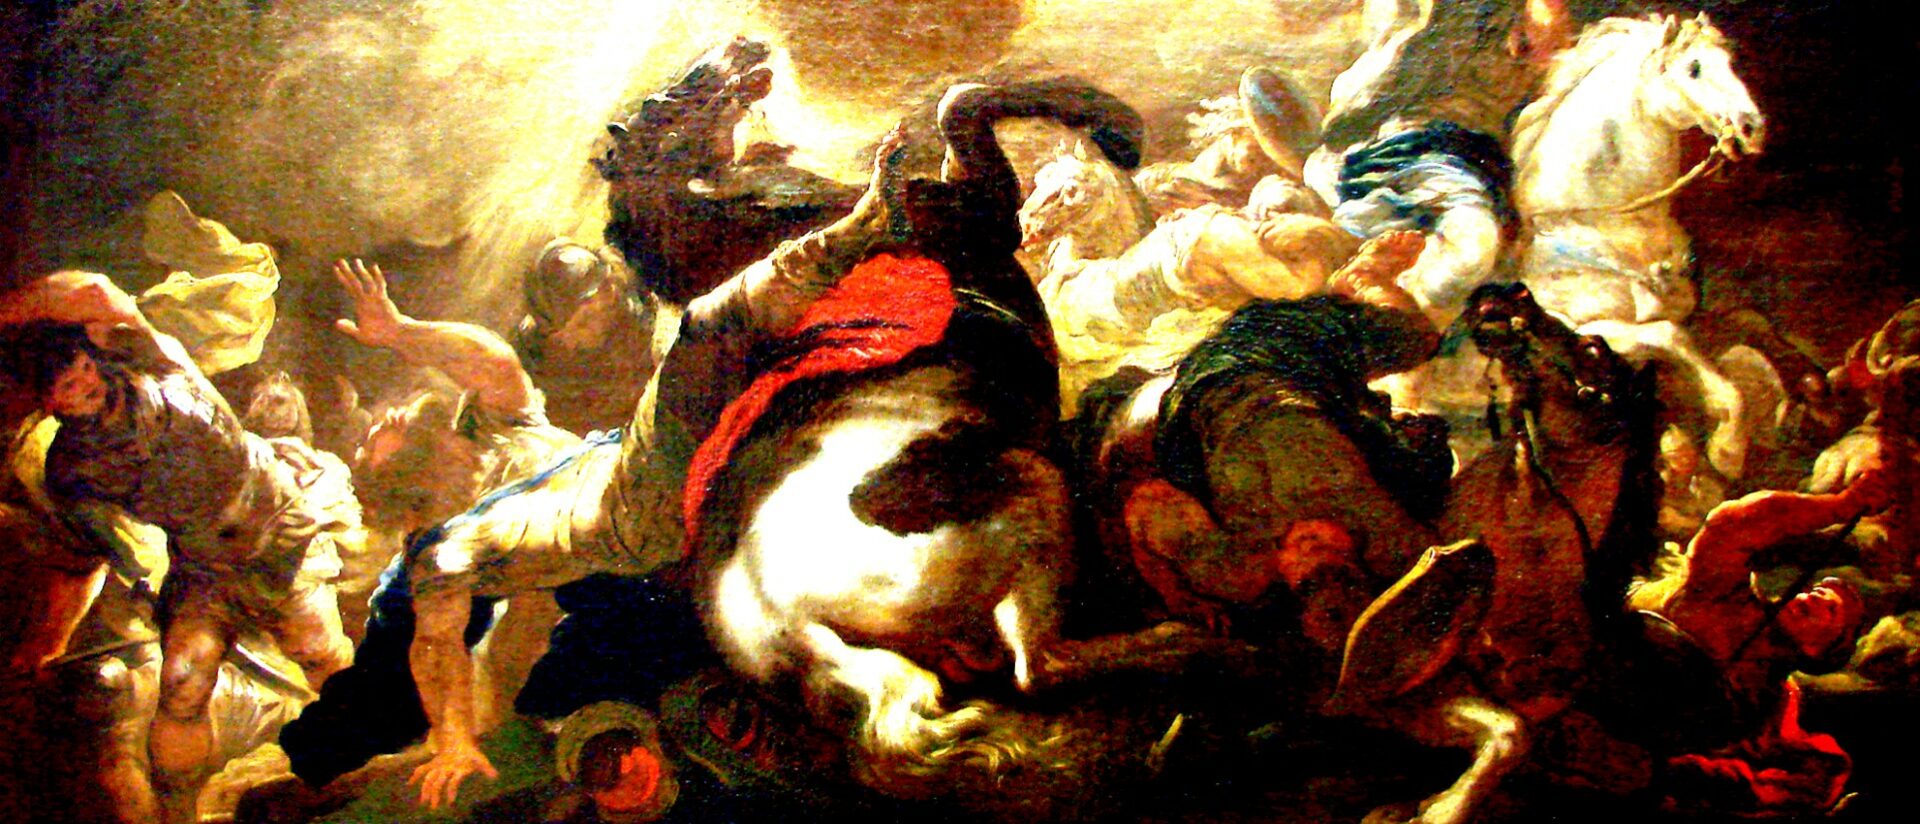 La conversion de Saint Paul, par Luca Giordano (vers 1690)| wikipedia  Musée des Beaux-Arts de Nancy